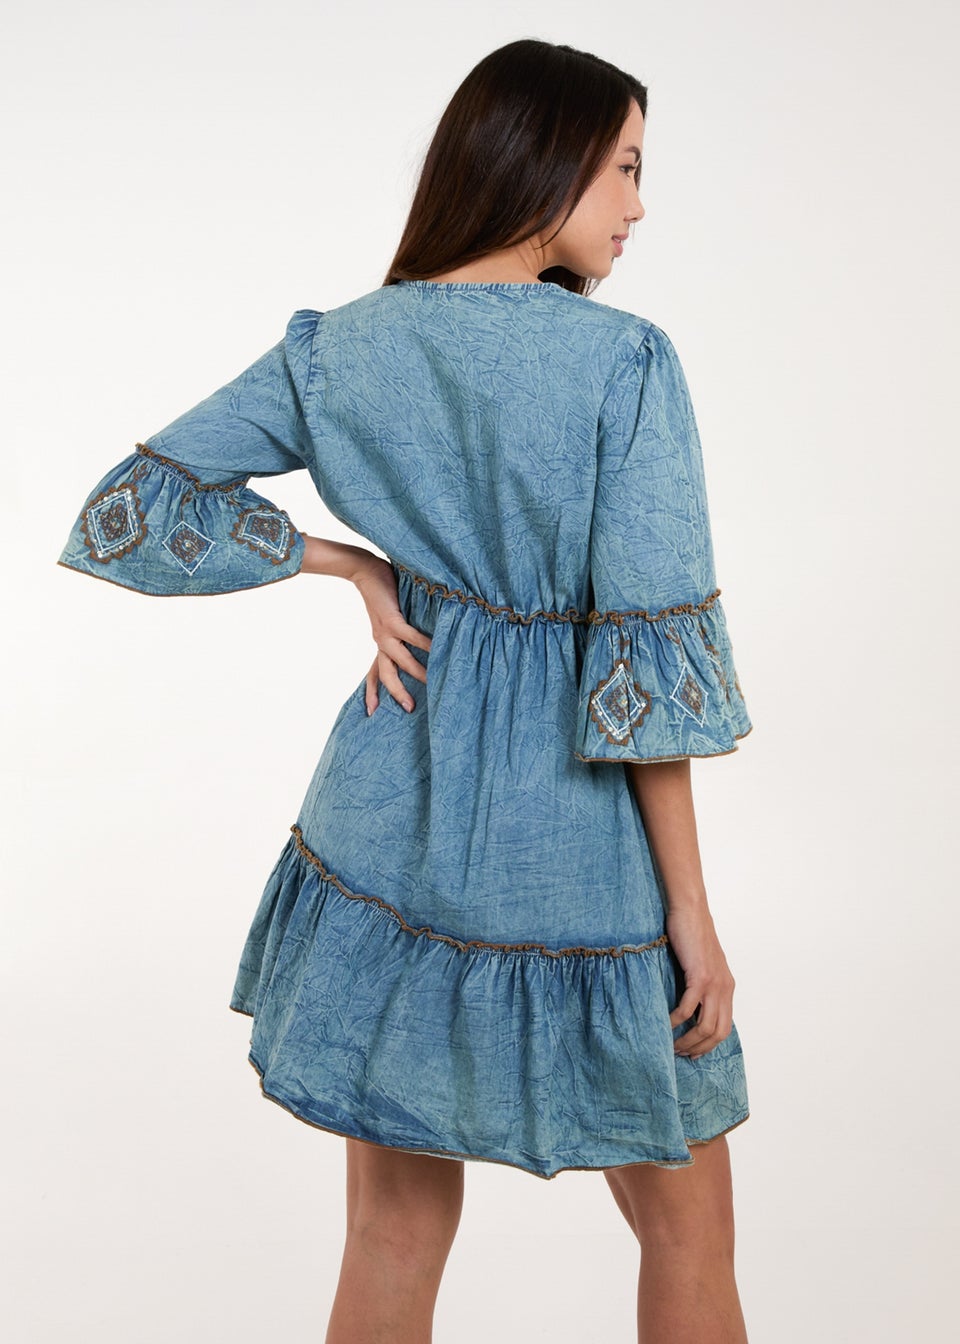 Blue Vanilla Blue Embroidered Denim Dress